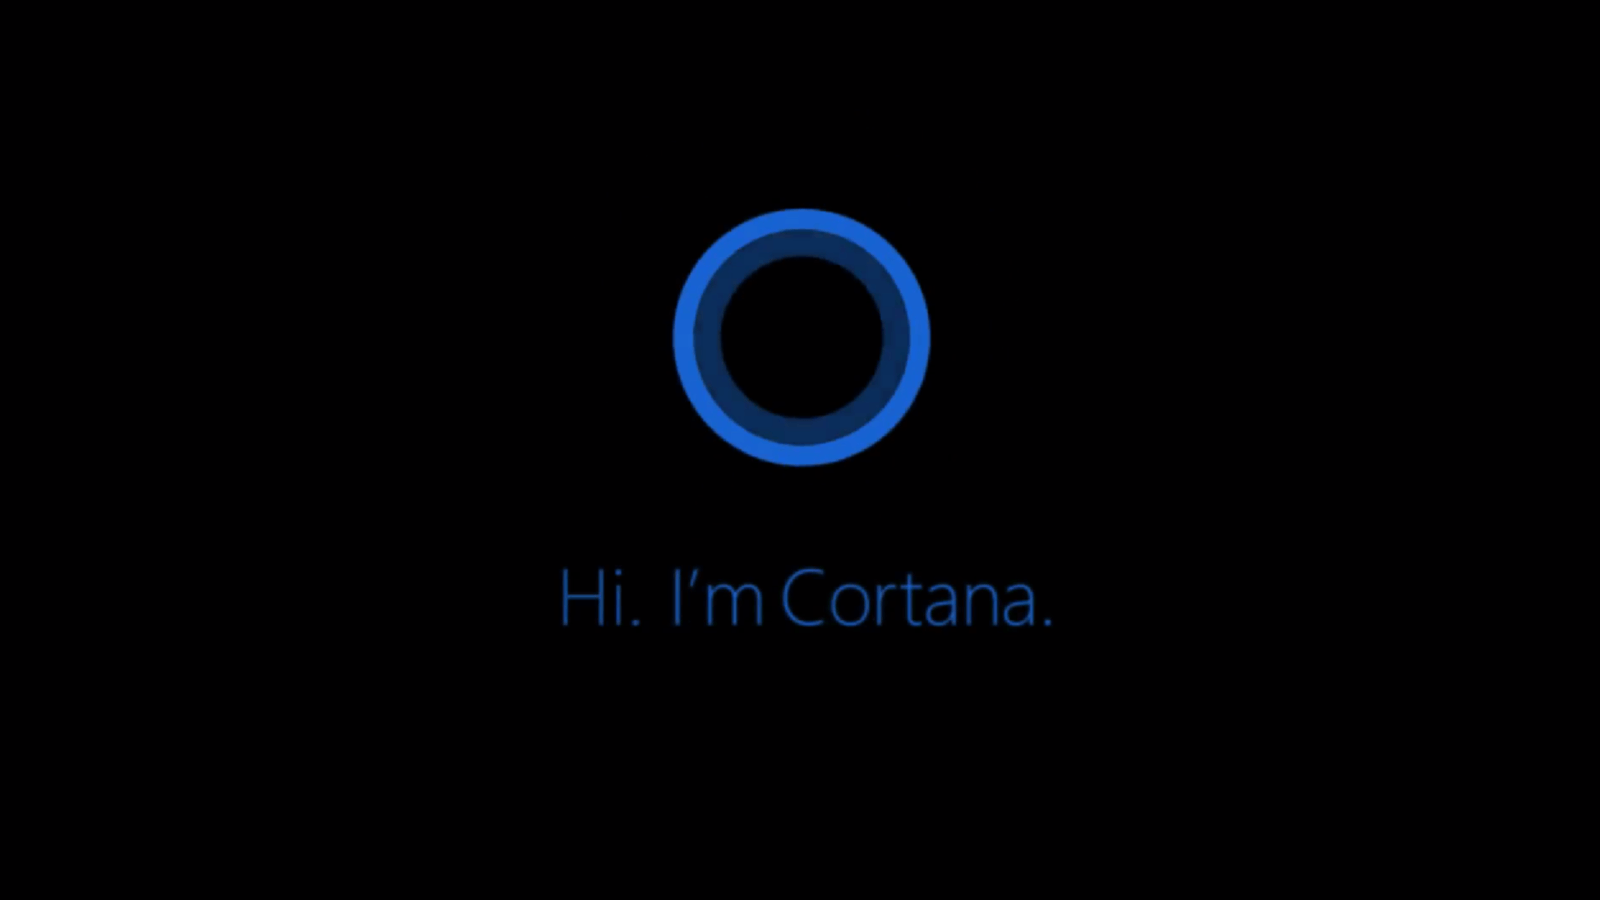 CortanaがWindows10でローカルアプリを見つけられない